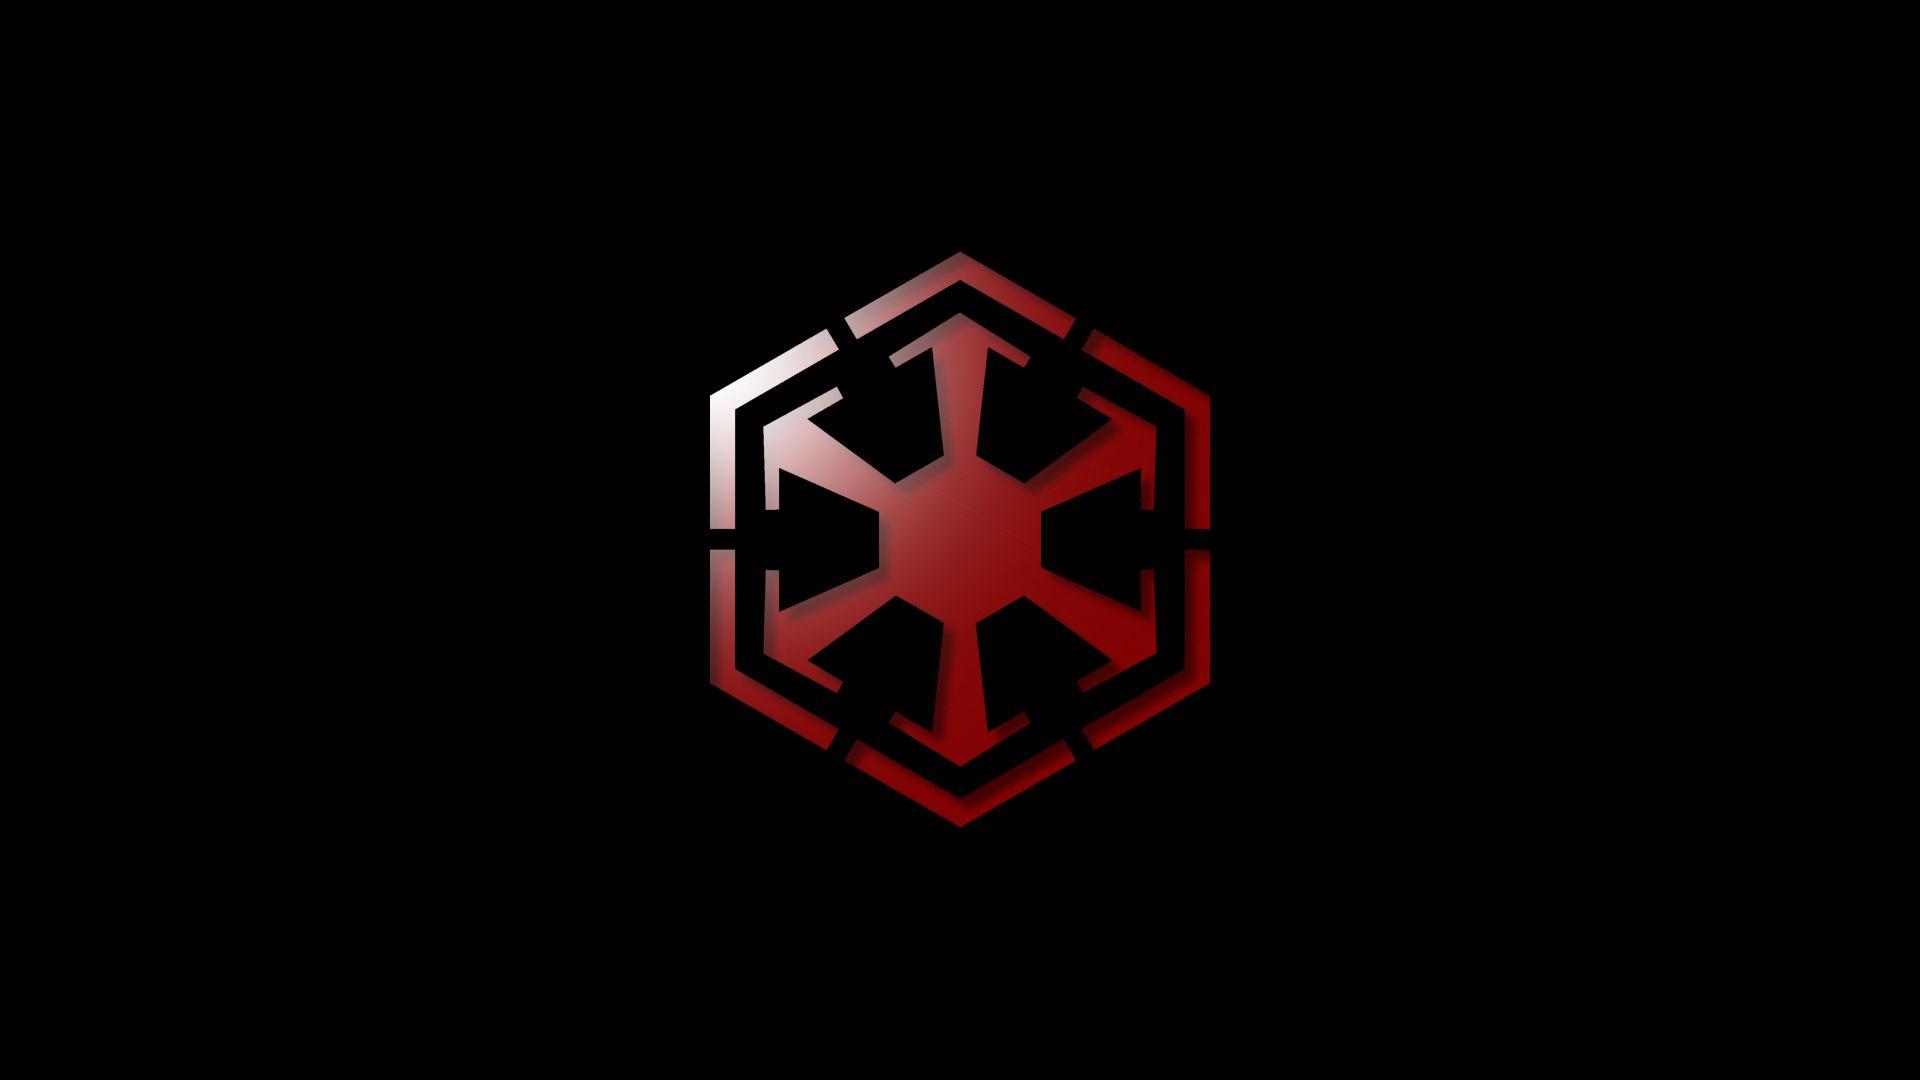 Sith Logo - Sith Emblem Wallpaper